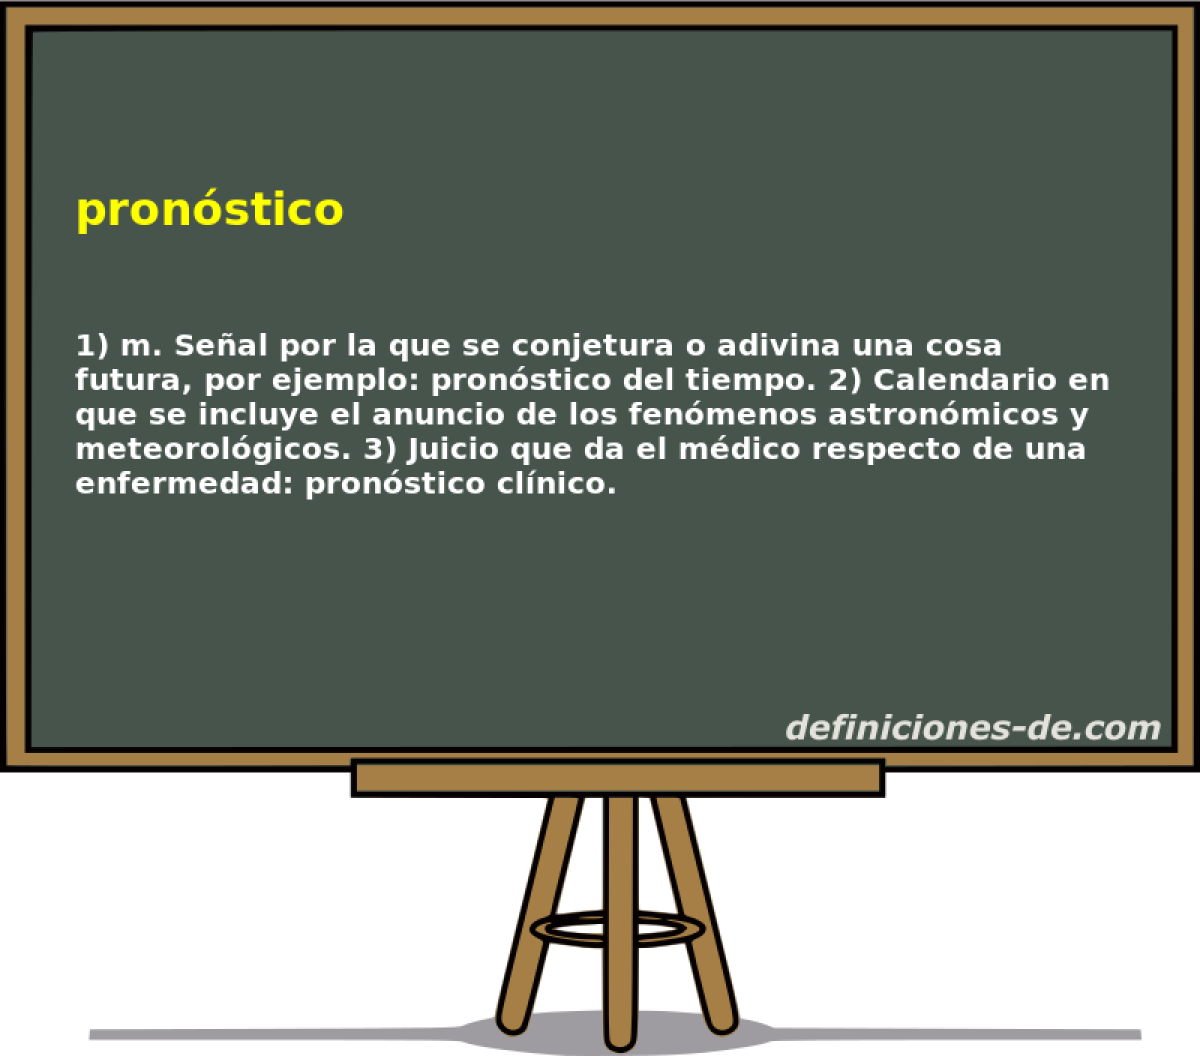 pronstico 